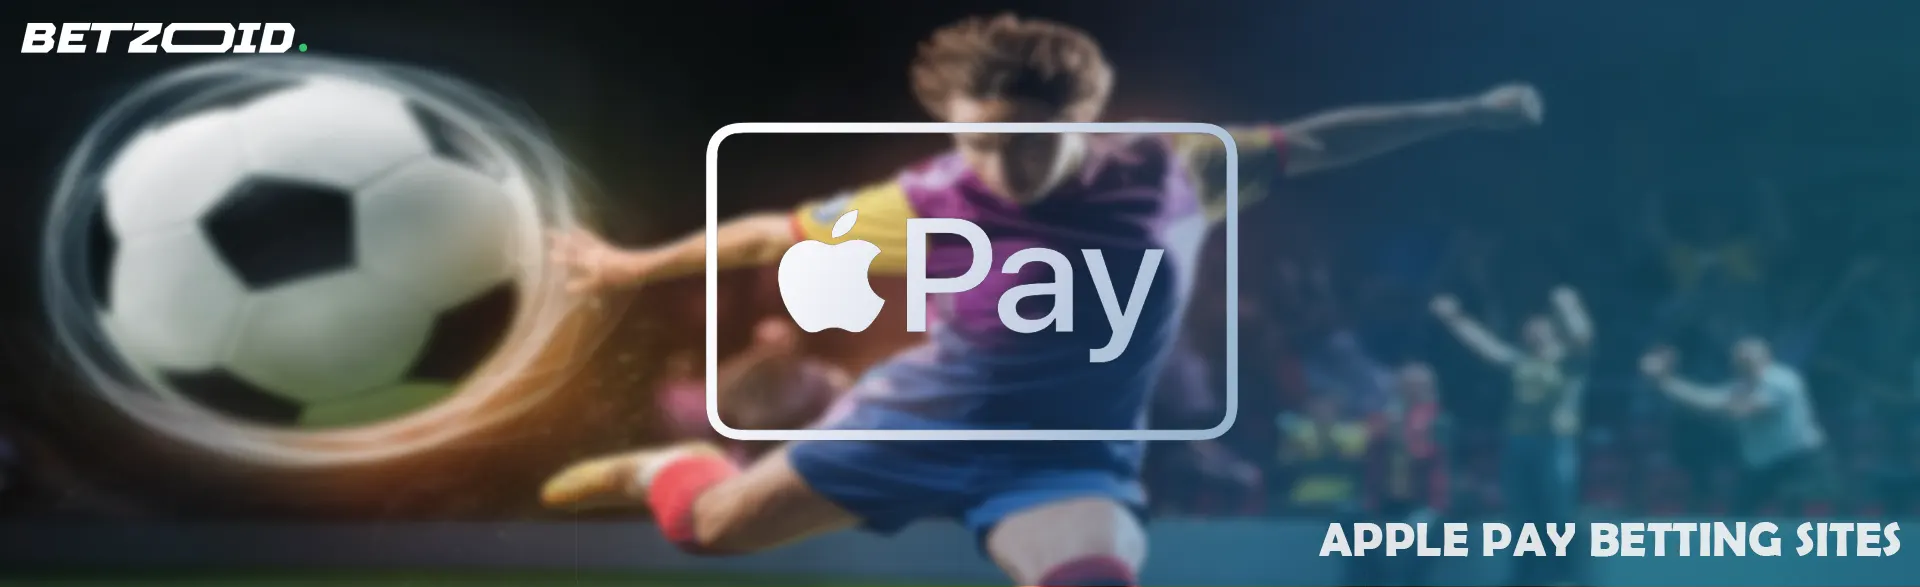 Apple Pay Betting in Australia - Betzoid.